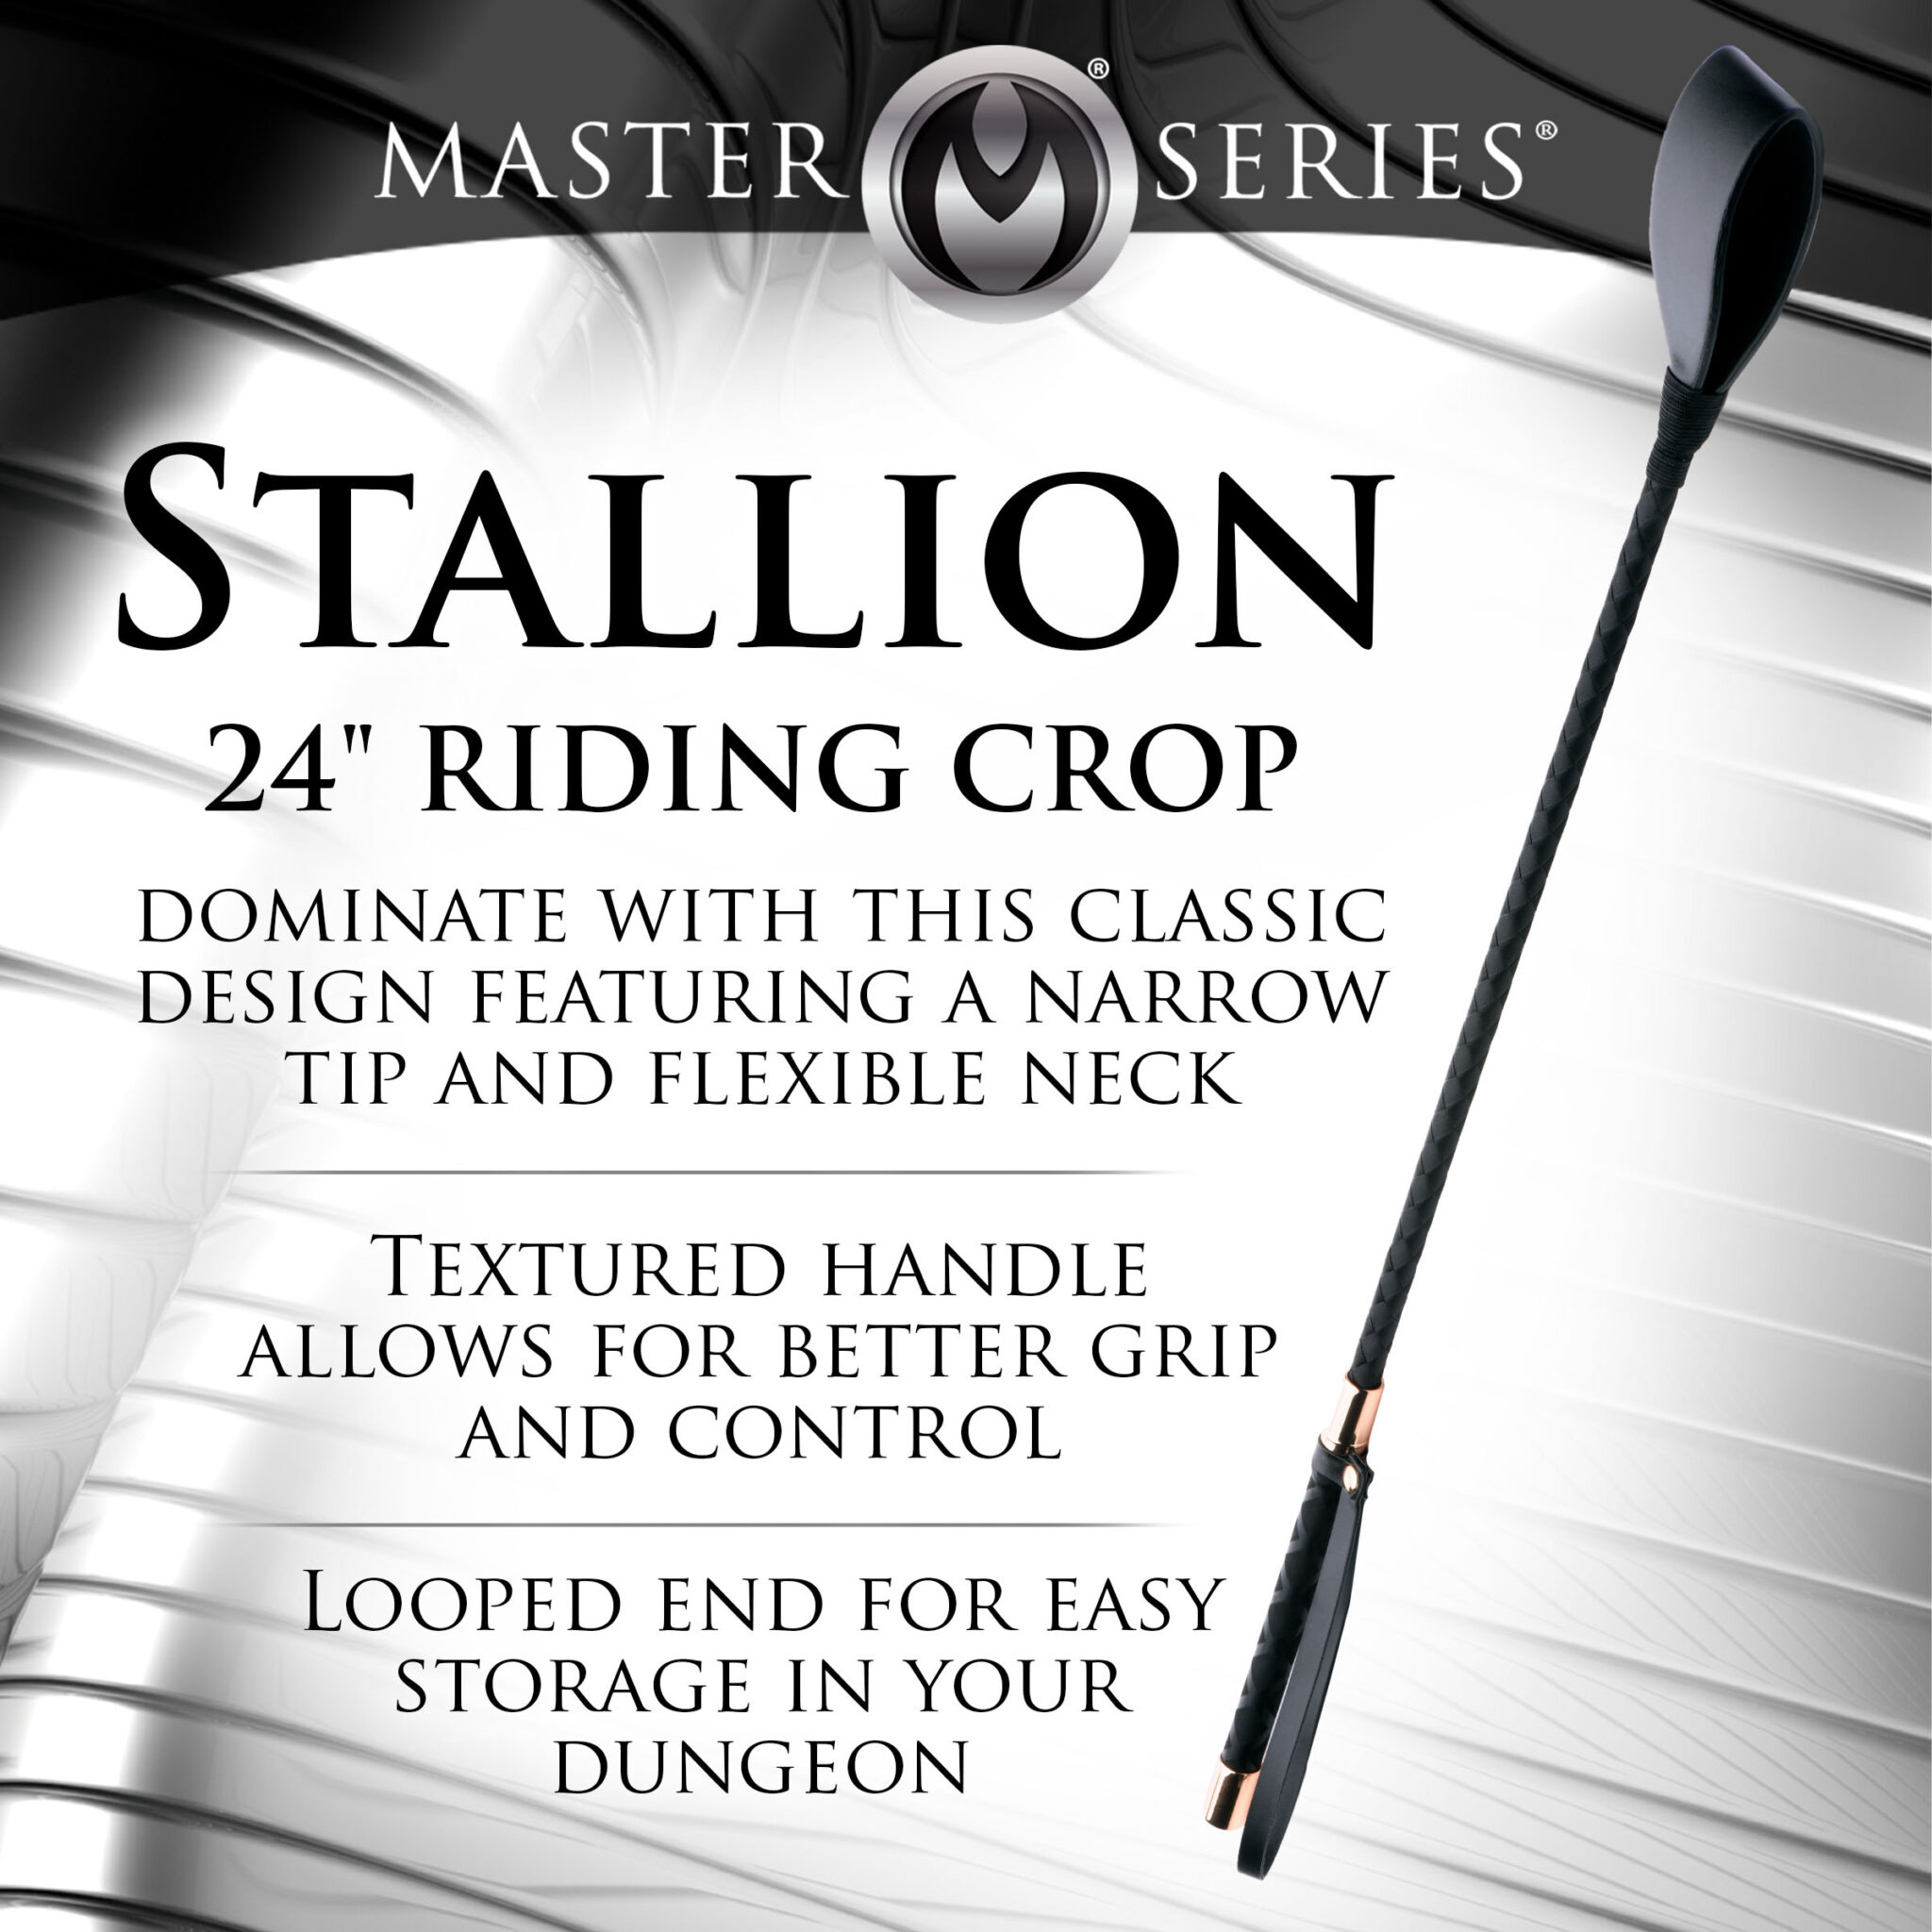 Stallion Riding Crop – 24 Inch